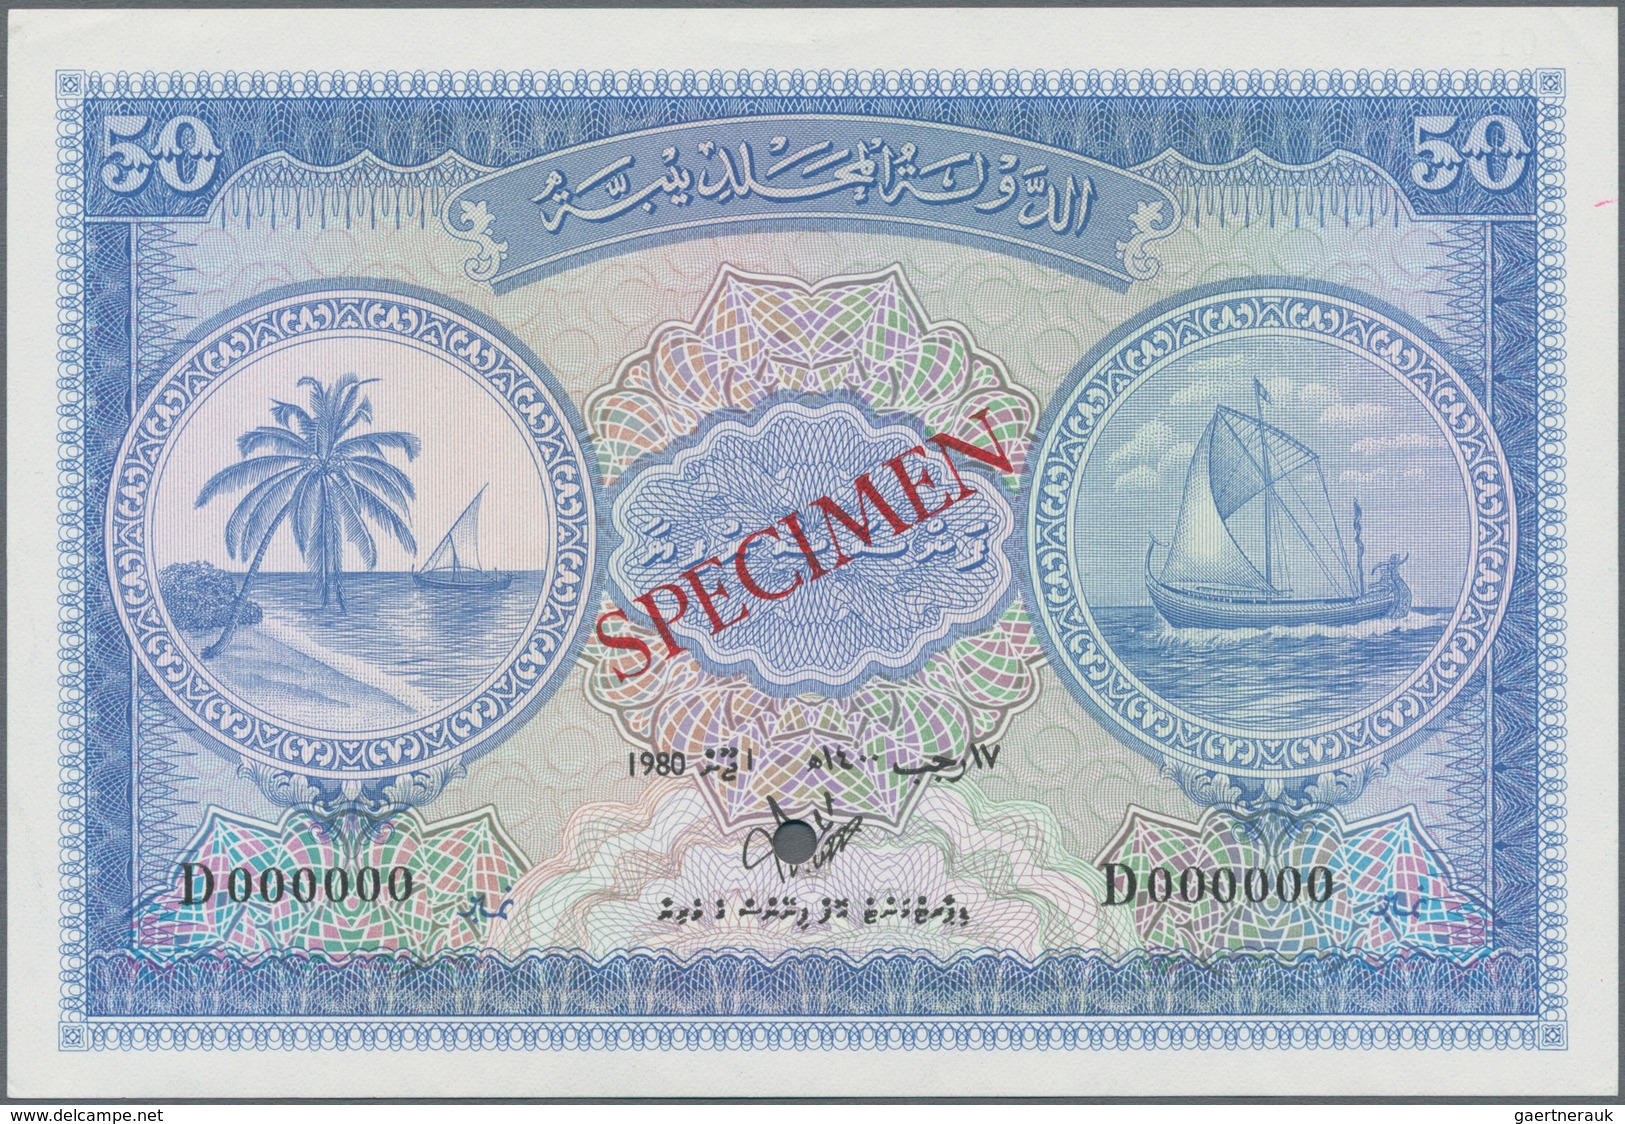 Maldives / Malediven: Maldivian State / Government Treasurer 50 Rufiyaa 1980 SPECIMEN, P.6cs, Zero S - Maldives